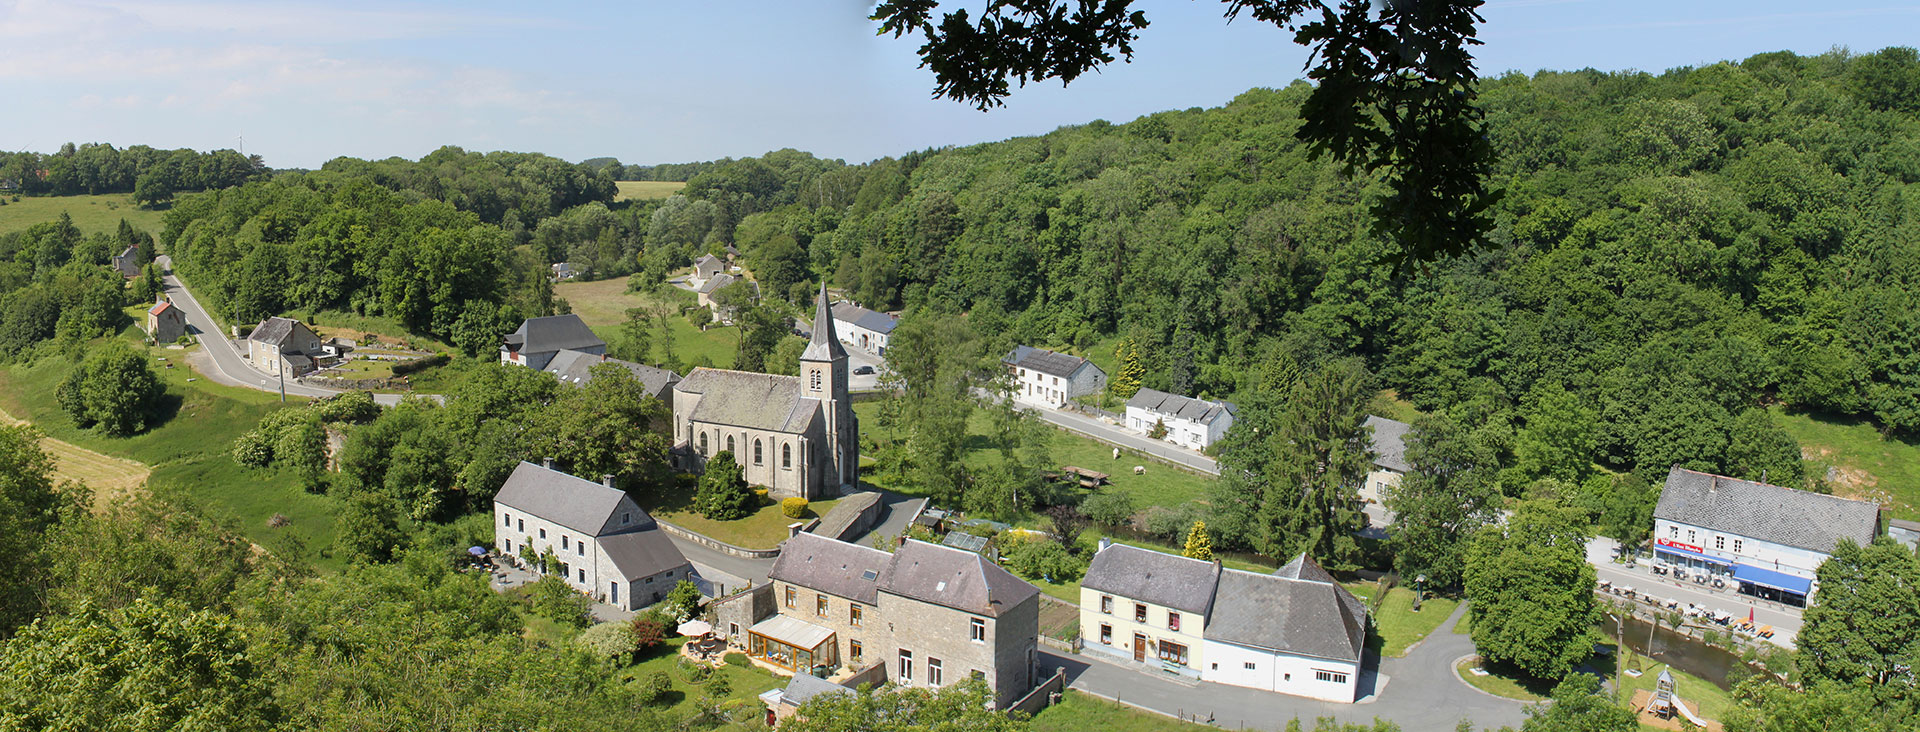 De mooiste dorpjes van Wallonië - Lompret - klokken - natuur - blauwe hemel - landschap